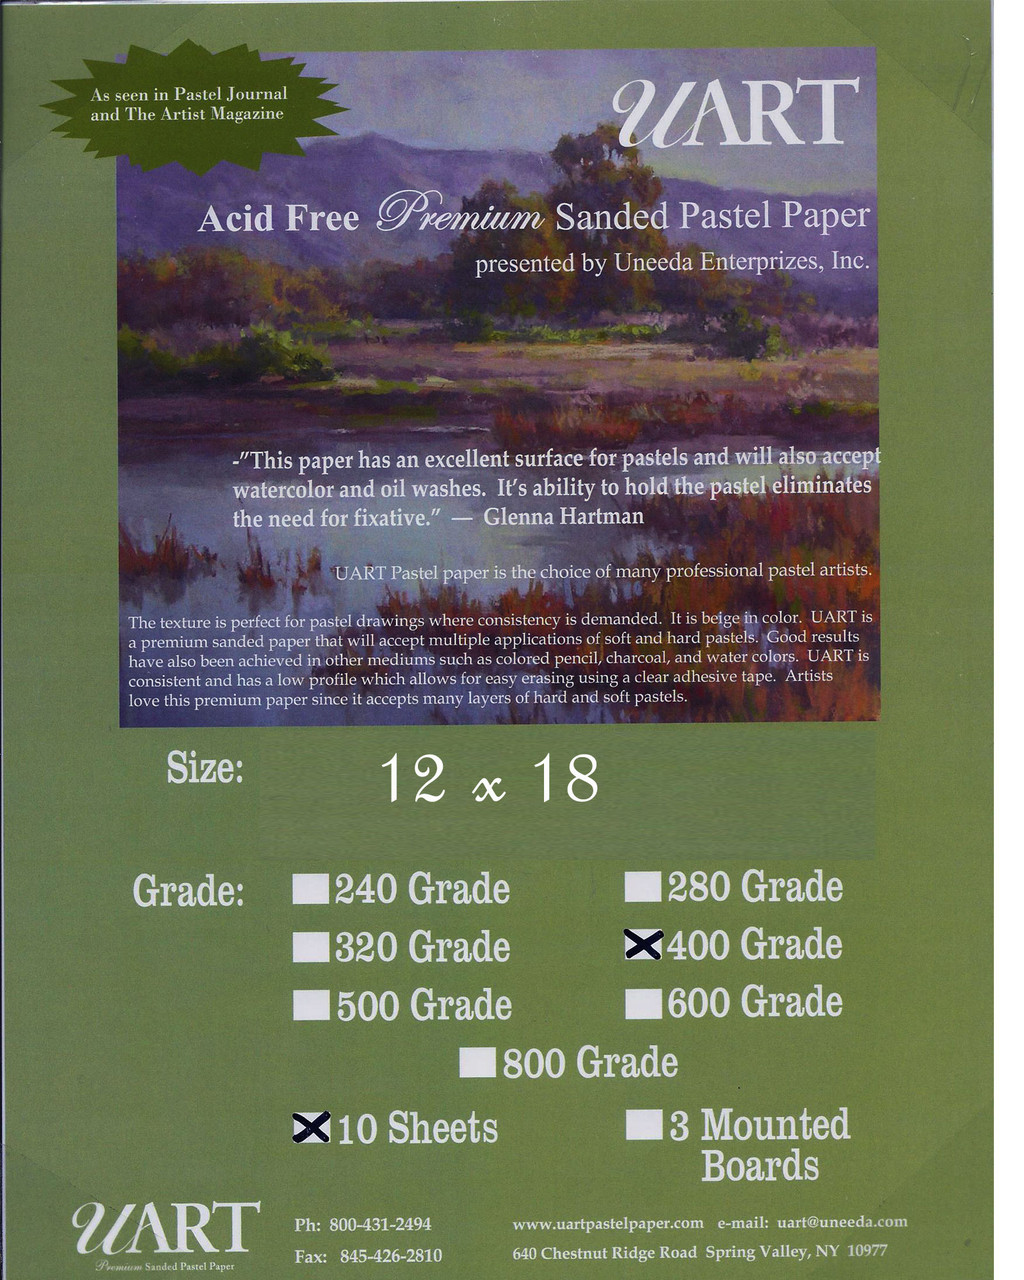 UART Sanded Pastel Paper 240 Grade 12 x 18 (Pack of 10)